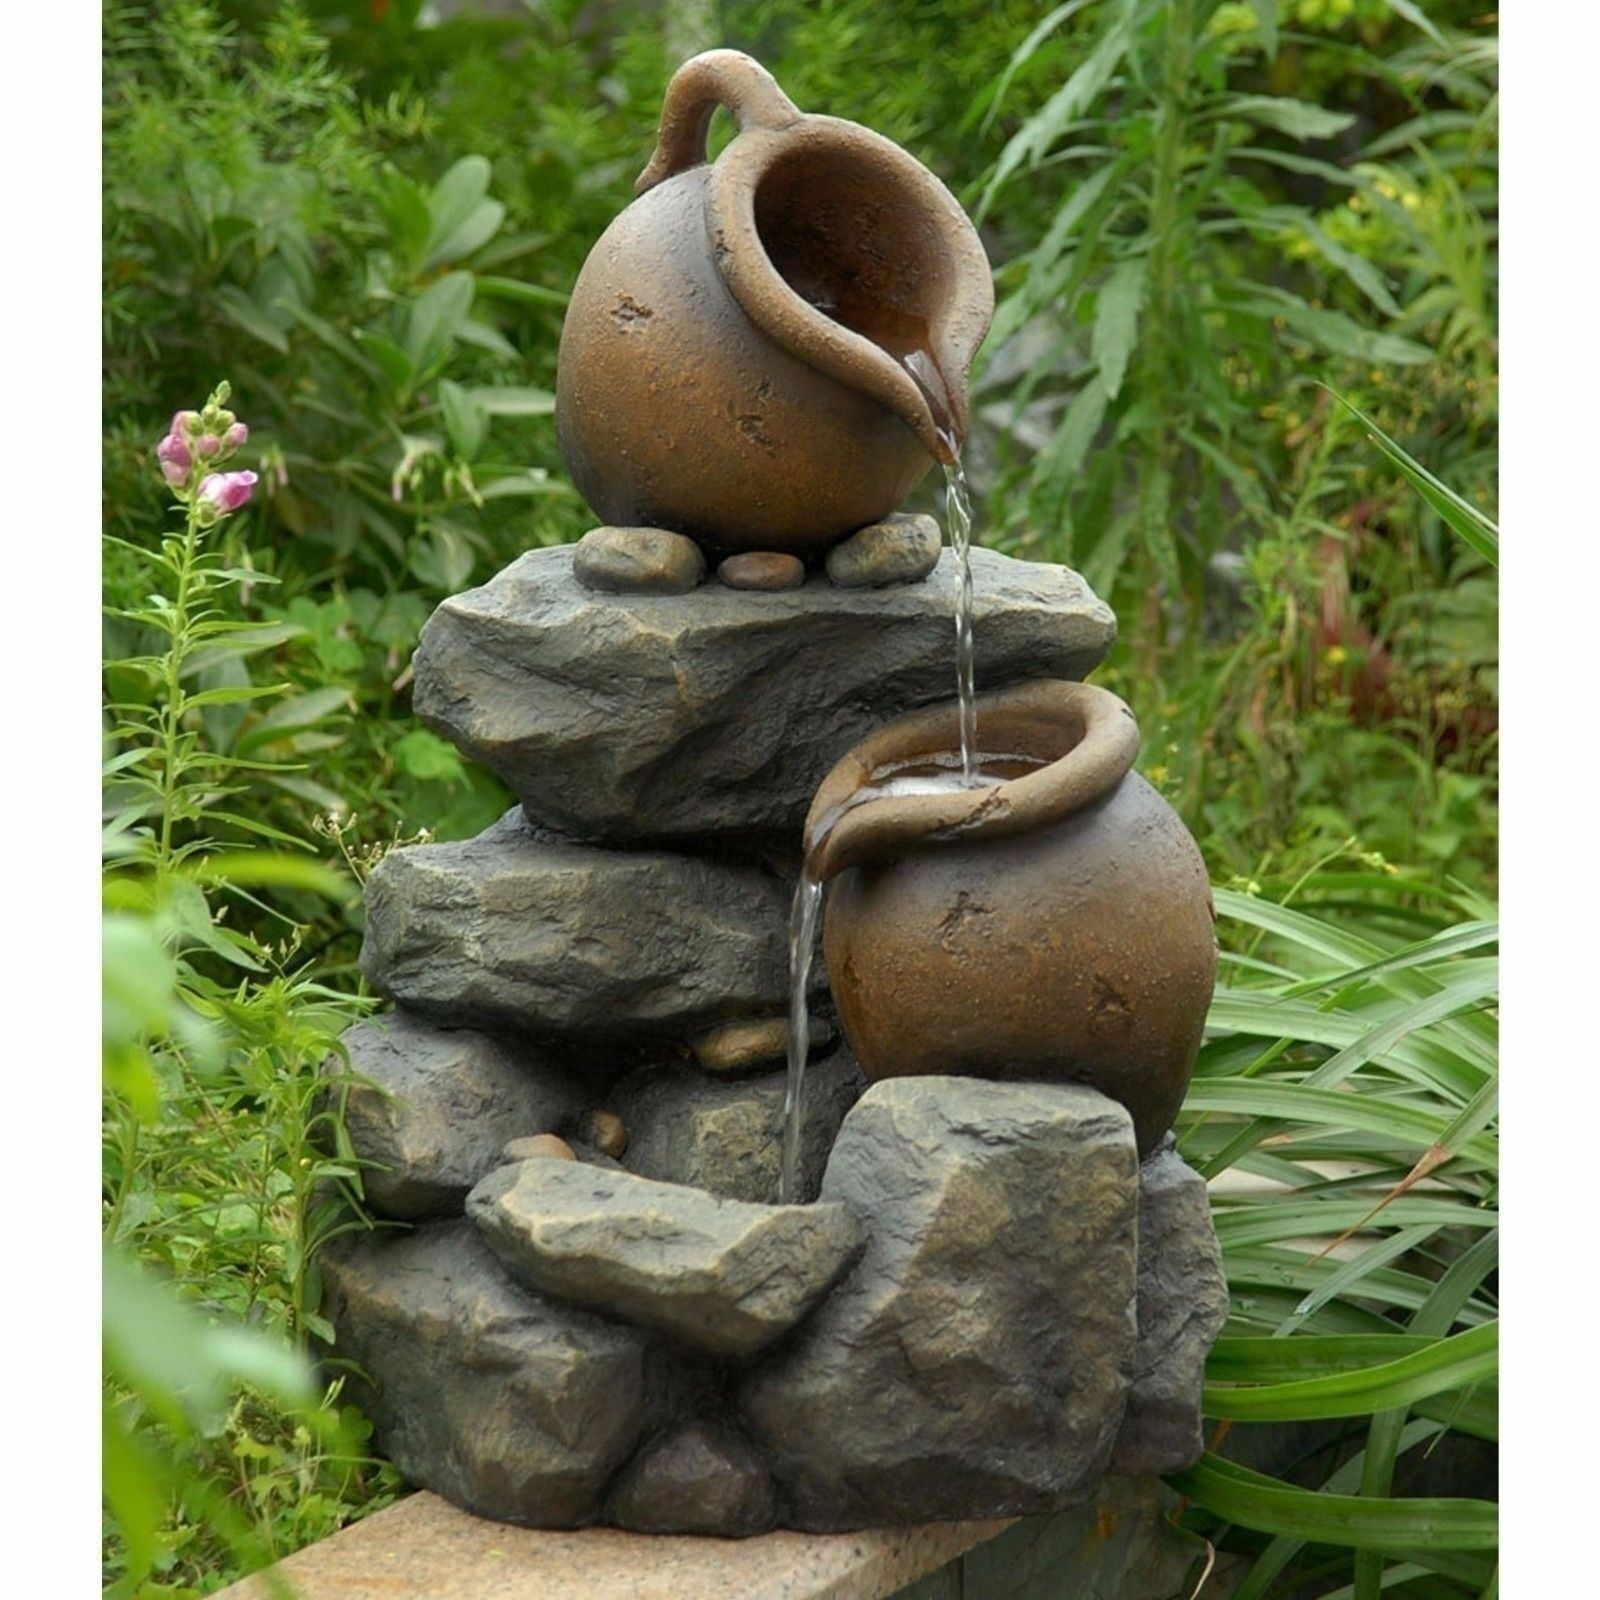 &nbsp; 3 Tier Pots Jugs Garden Fountain Outdoor Decor w/ Water Pump 21" Tall Patio Deck